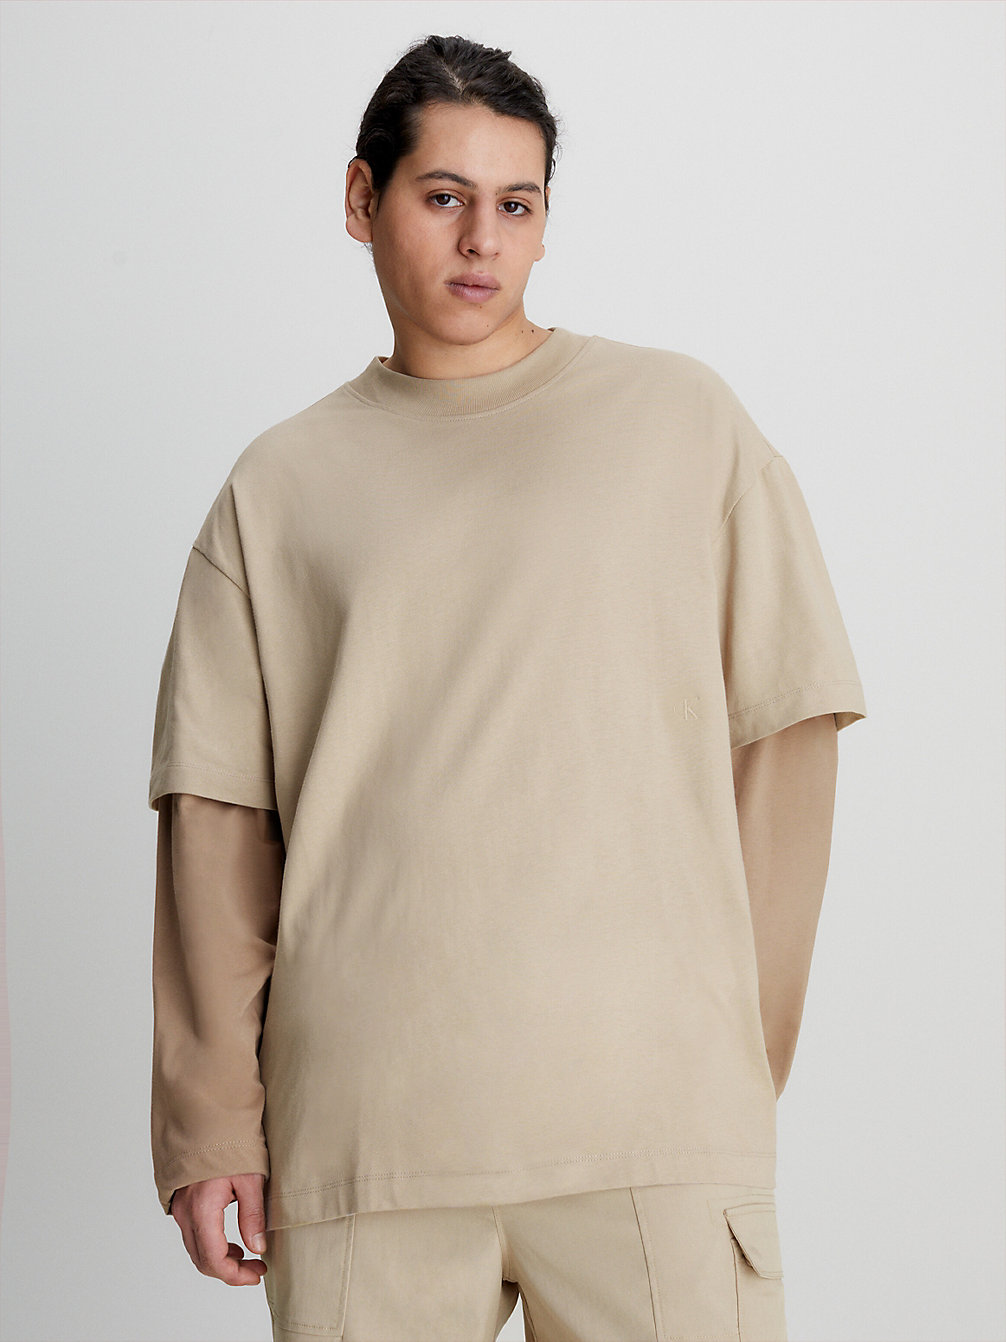 SOFT BEIGE > Doppel-Layer Langärmliges T-Shirt > undefined Herren - Calvin Klein